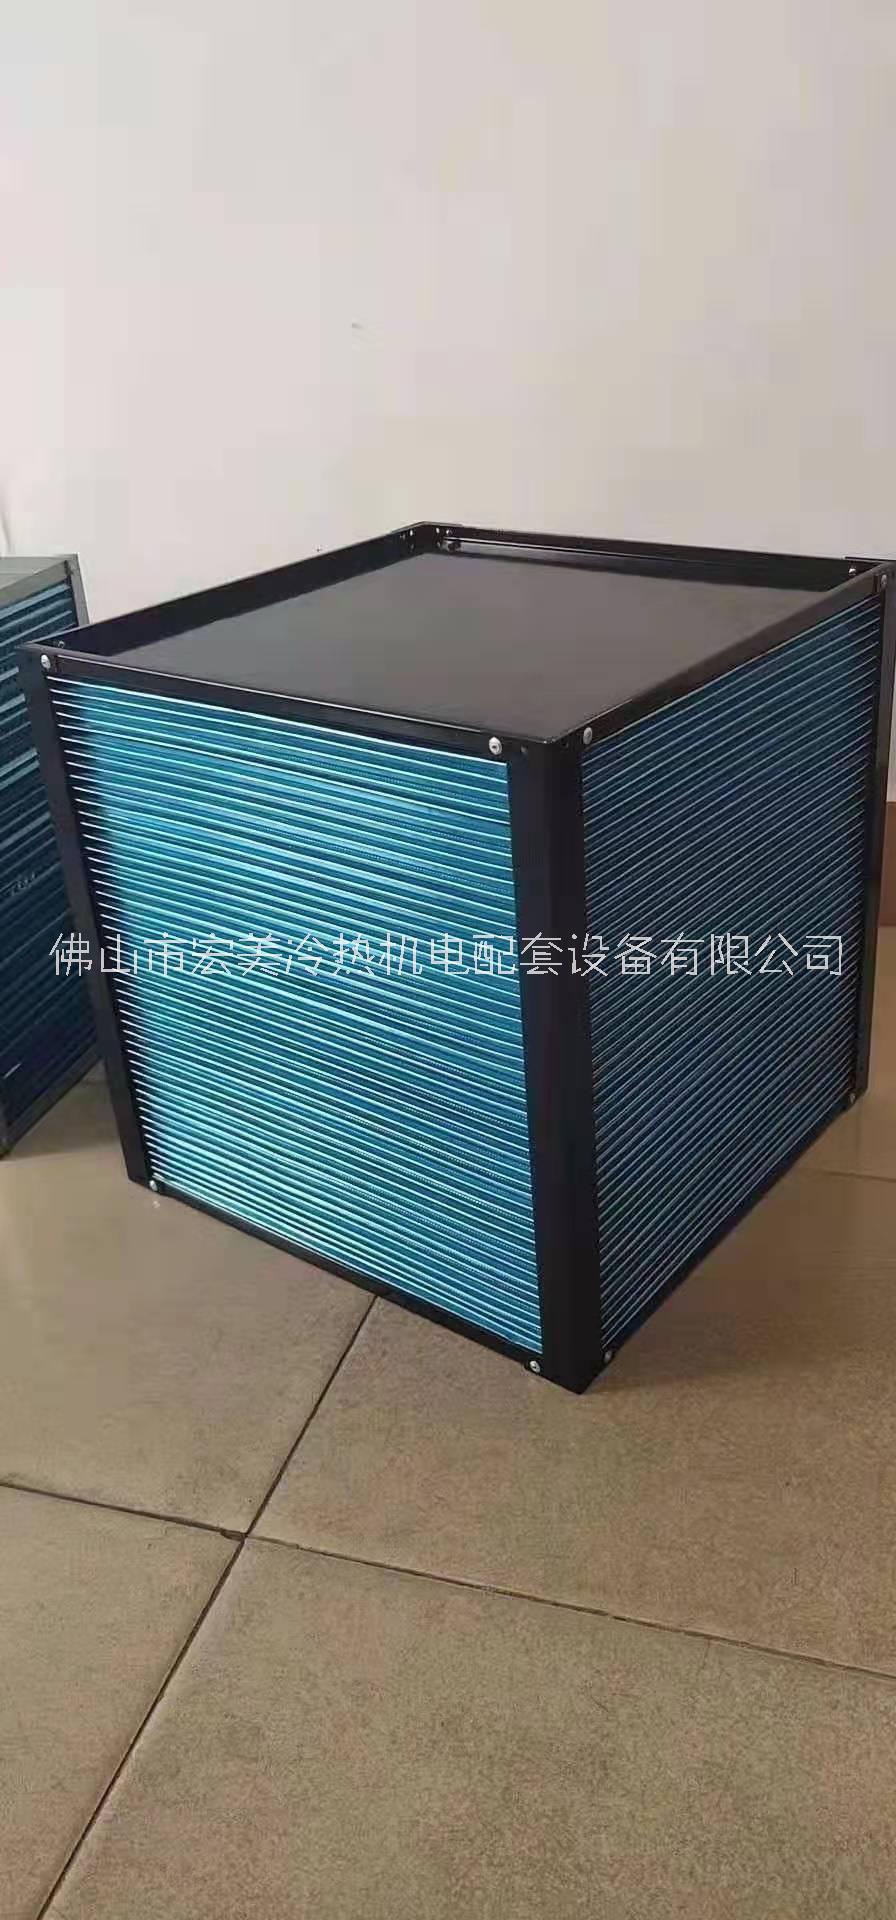 新风热回收芯体 全热交换器显热交换器热回收新风(冷)热交换器芯体换热芯体图片